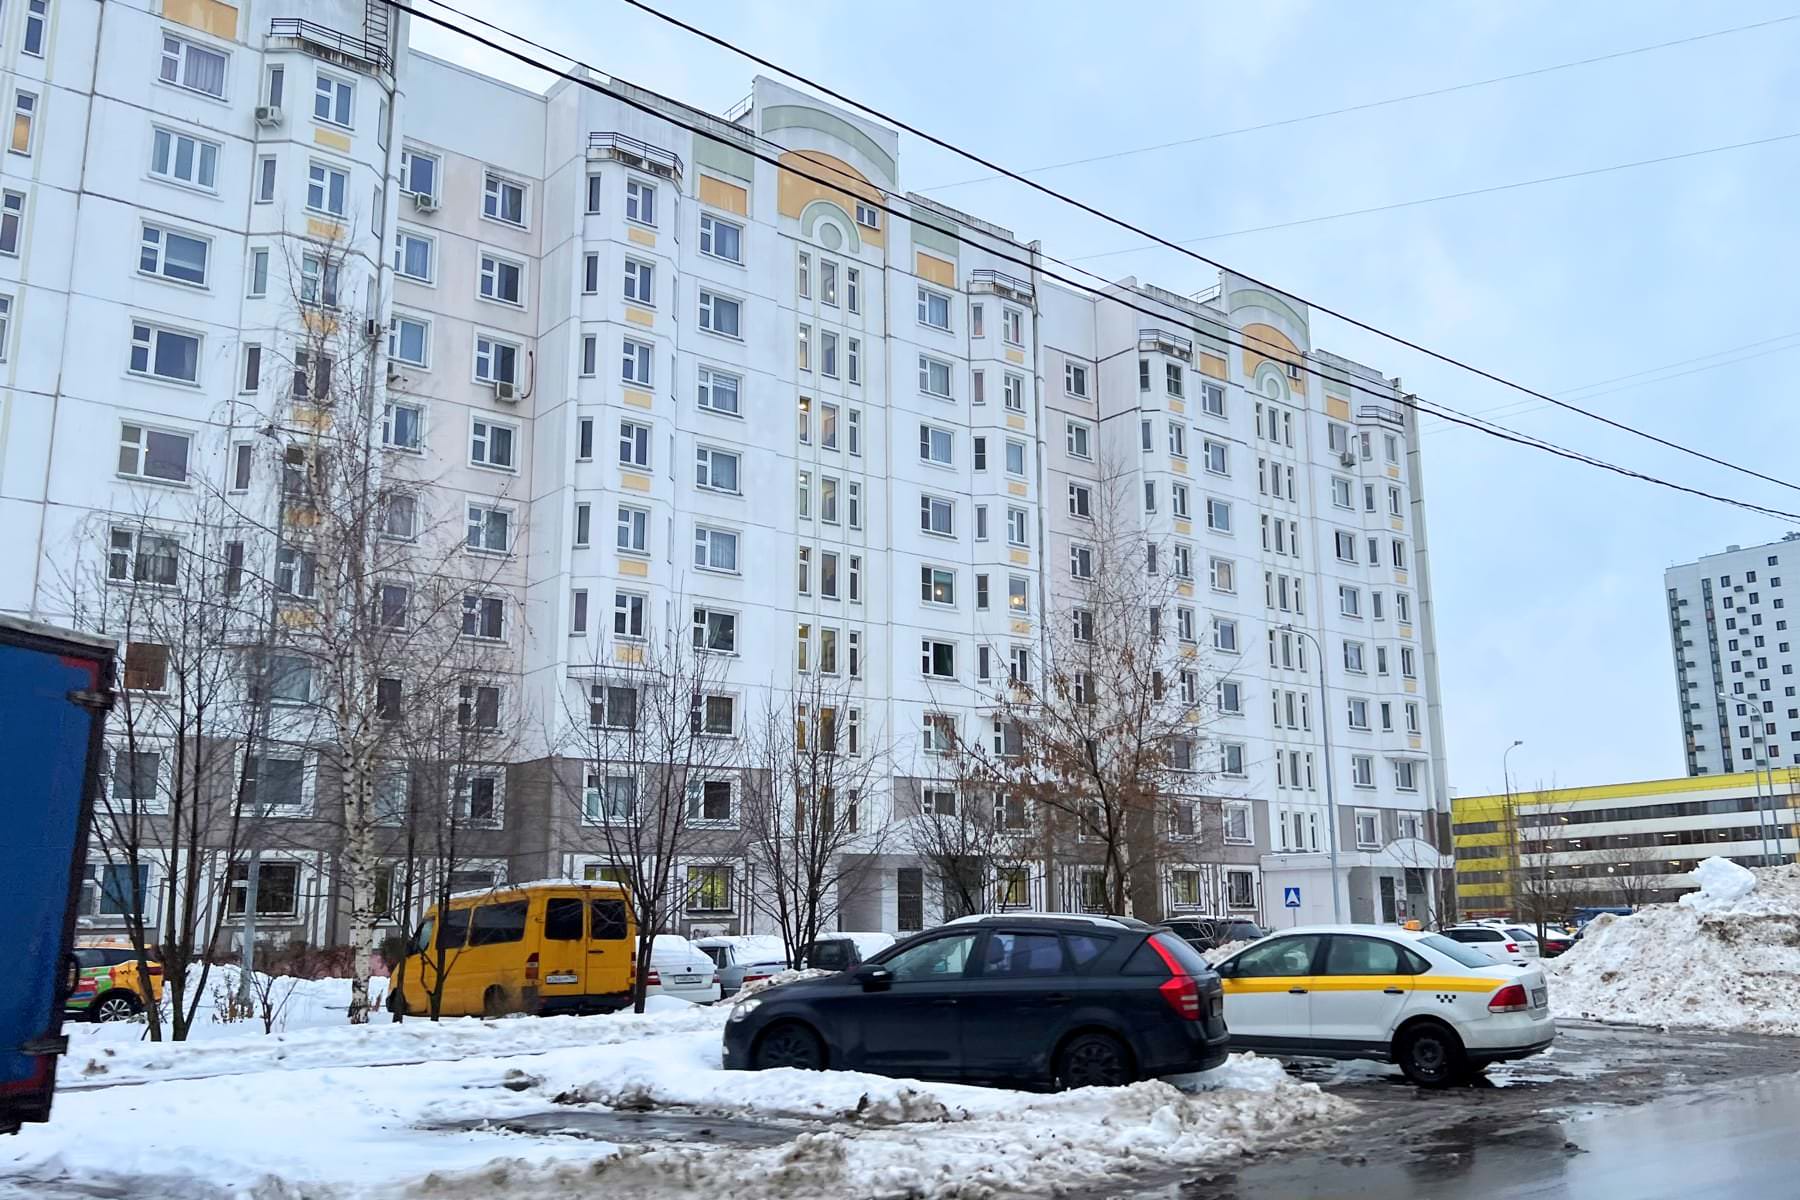 Впервые за 20 лет. Цены на квартиры обрушатся по всей России